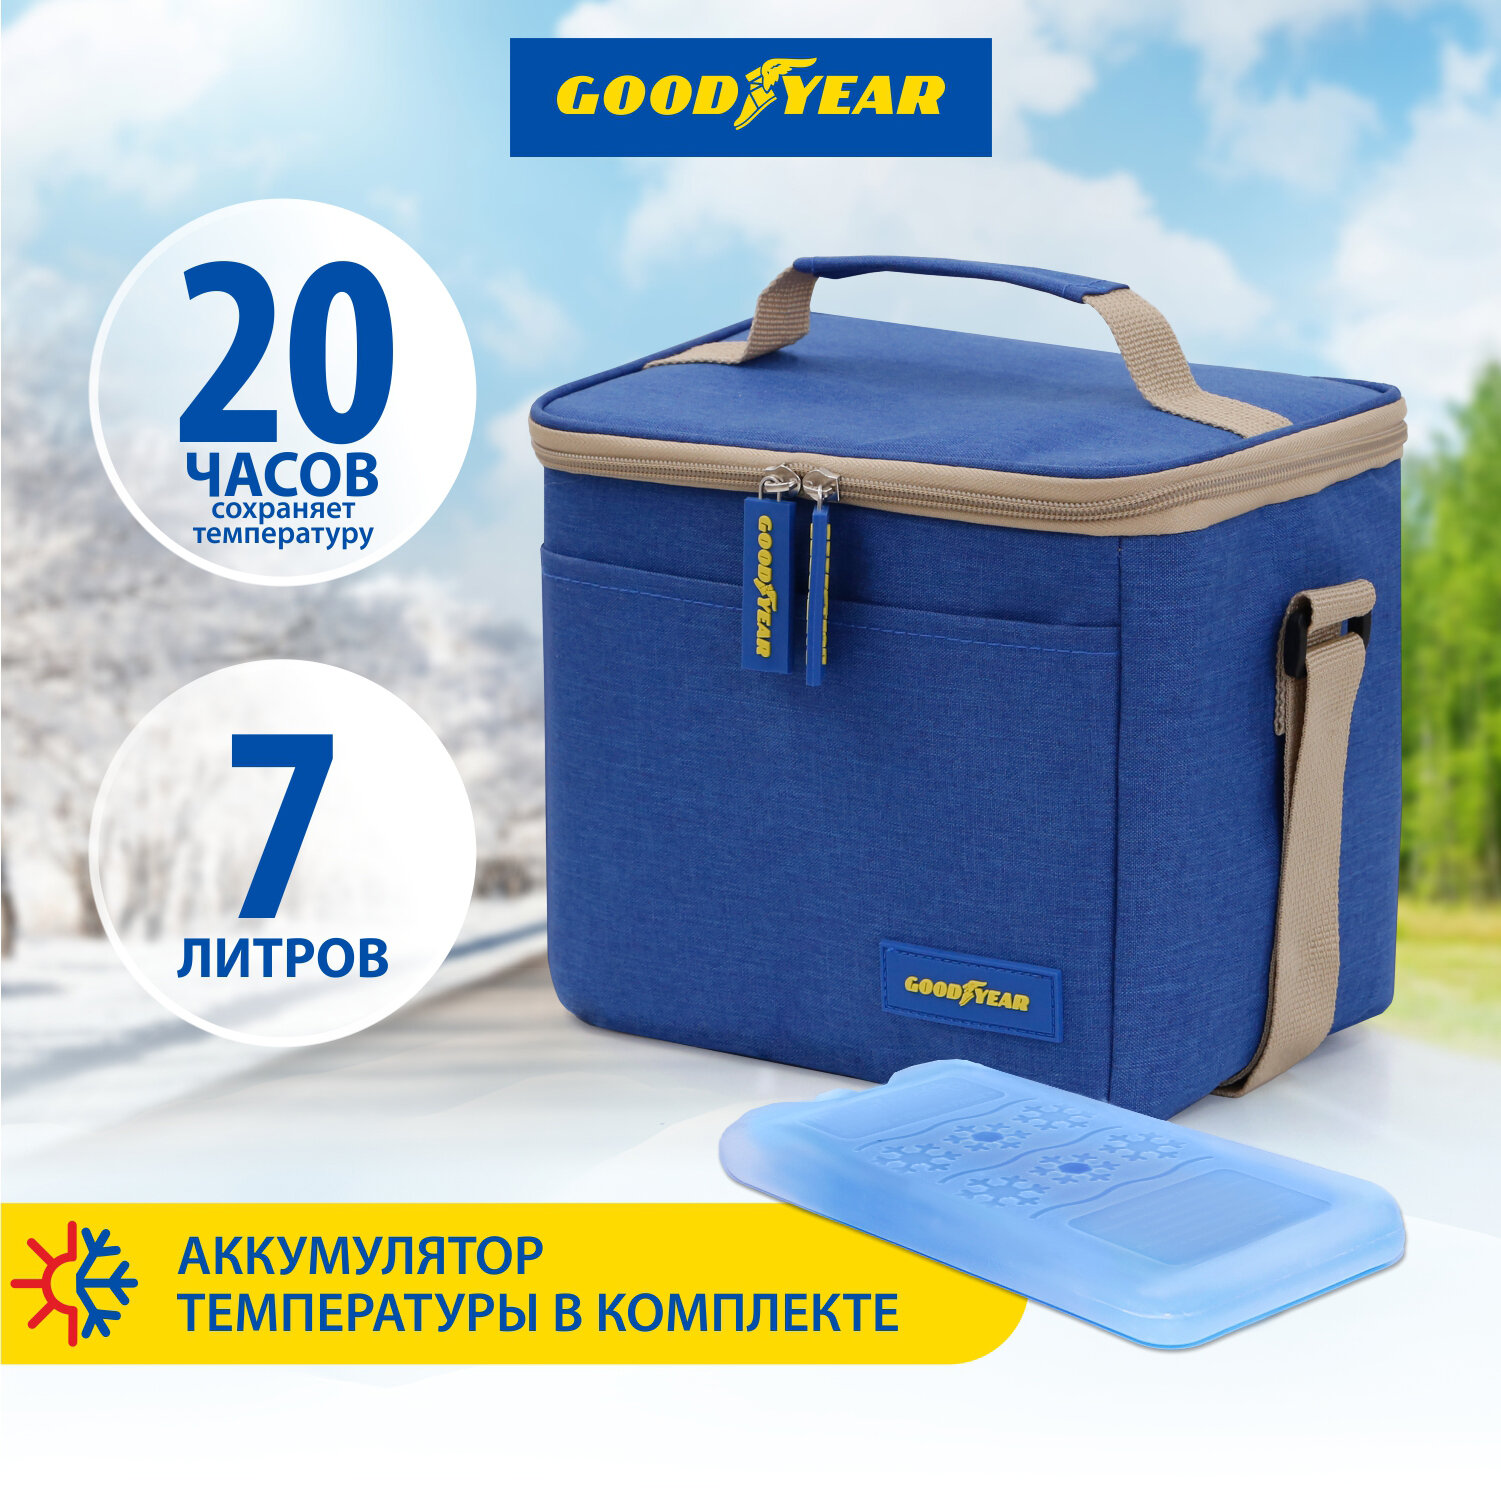 Термосумка/ сумка-холодильник/ классическая Goodyear GY-CB-7L /7 литров с аккумулятором холода